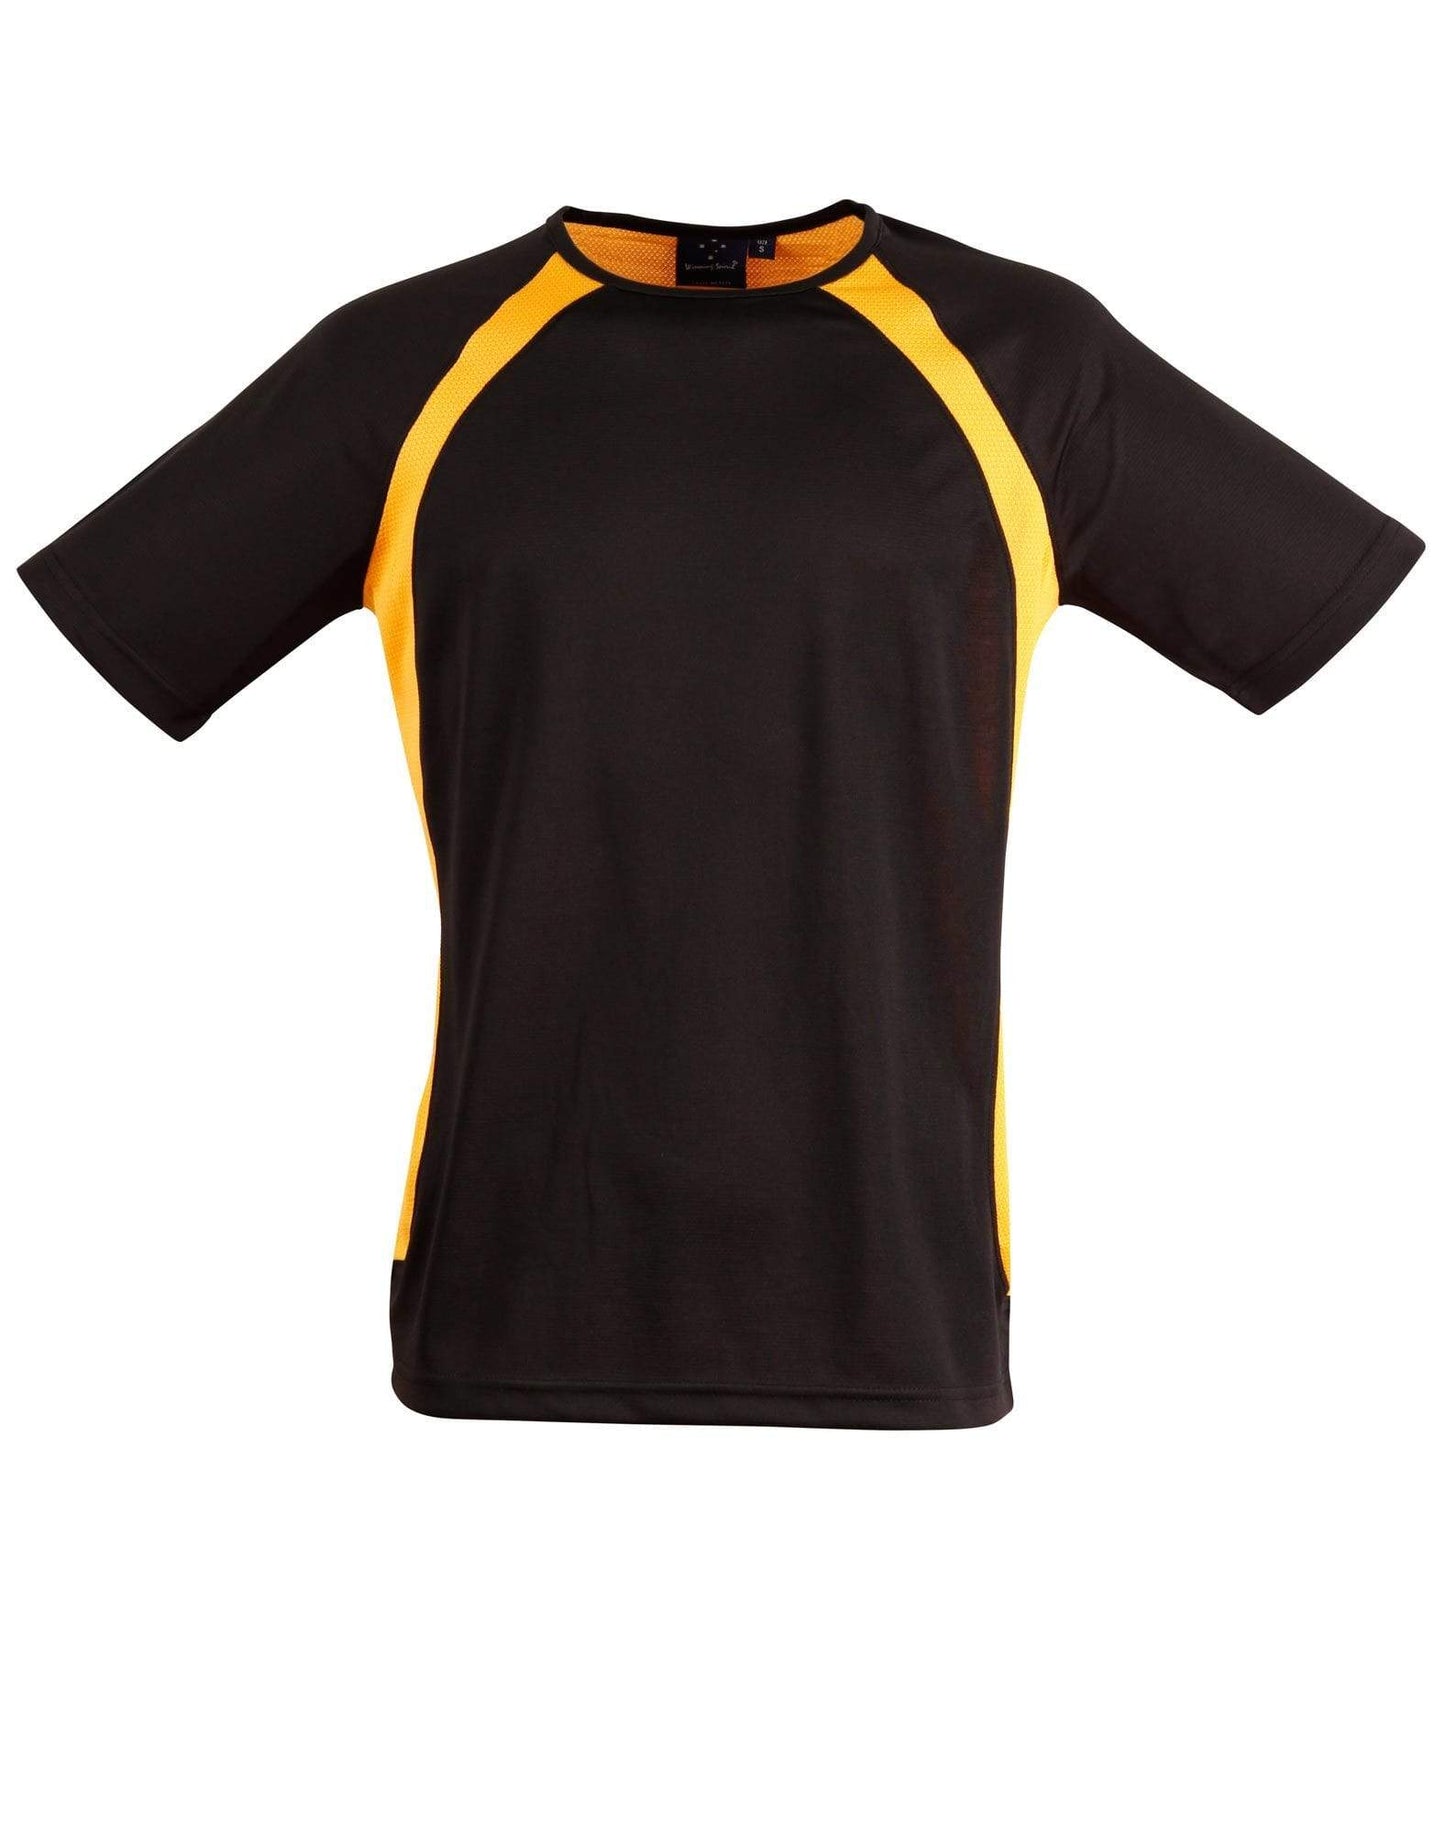 Winning Spirit Casual Wear Black/Gold / S Sprint Tee Shirt Men's Ts71